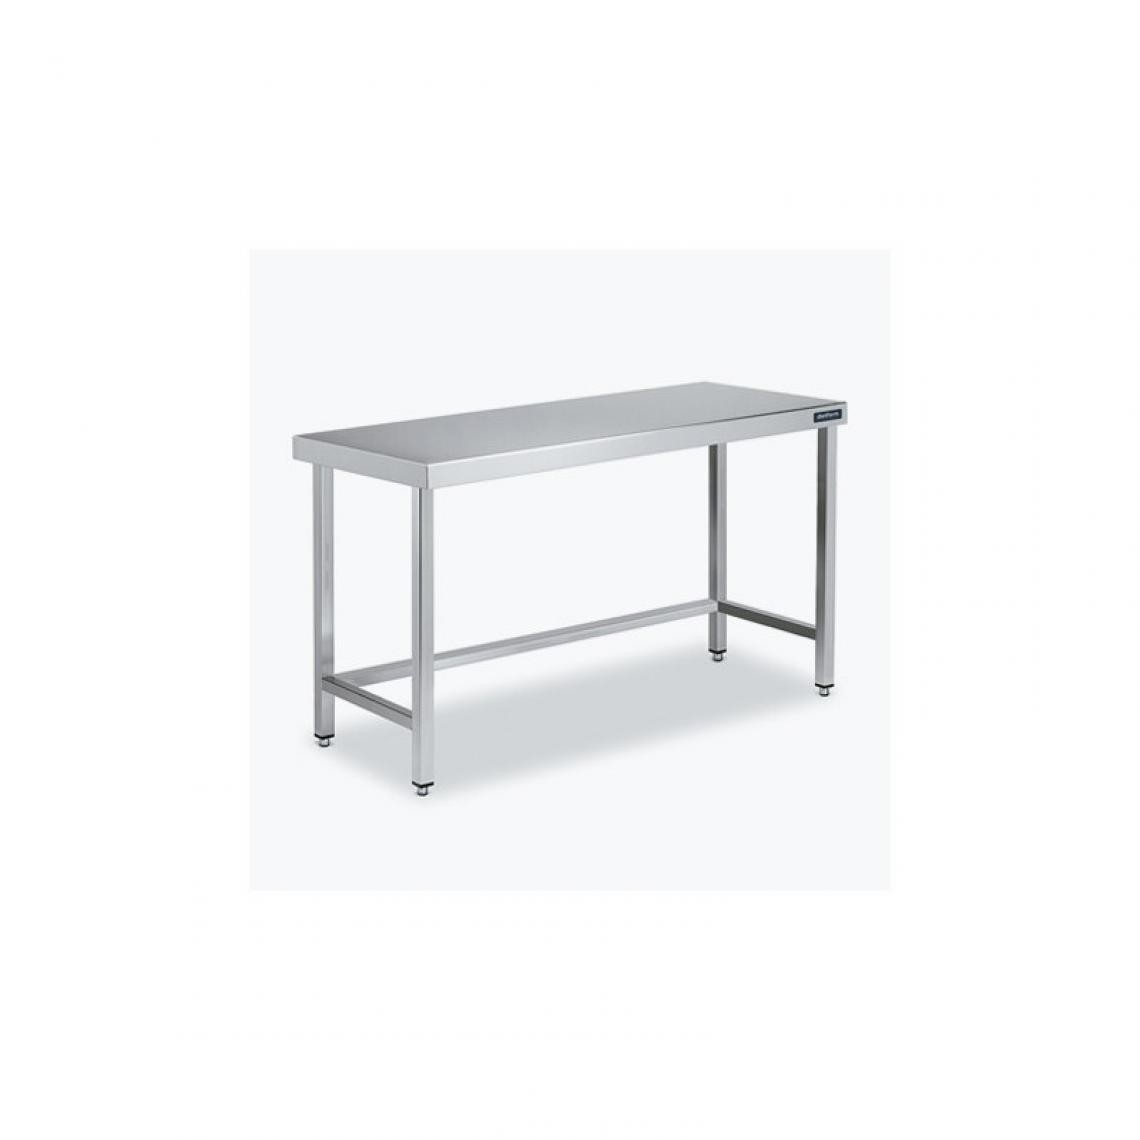 DISTFORM - Table Centrale 600x900 avec Renforts - Distform - Inox 18/101700x900x850mm - Tables à manger